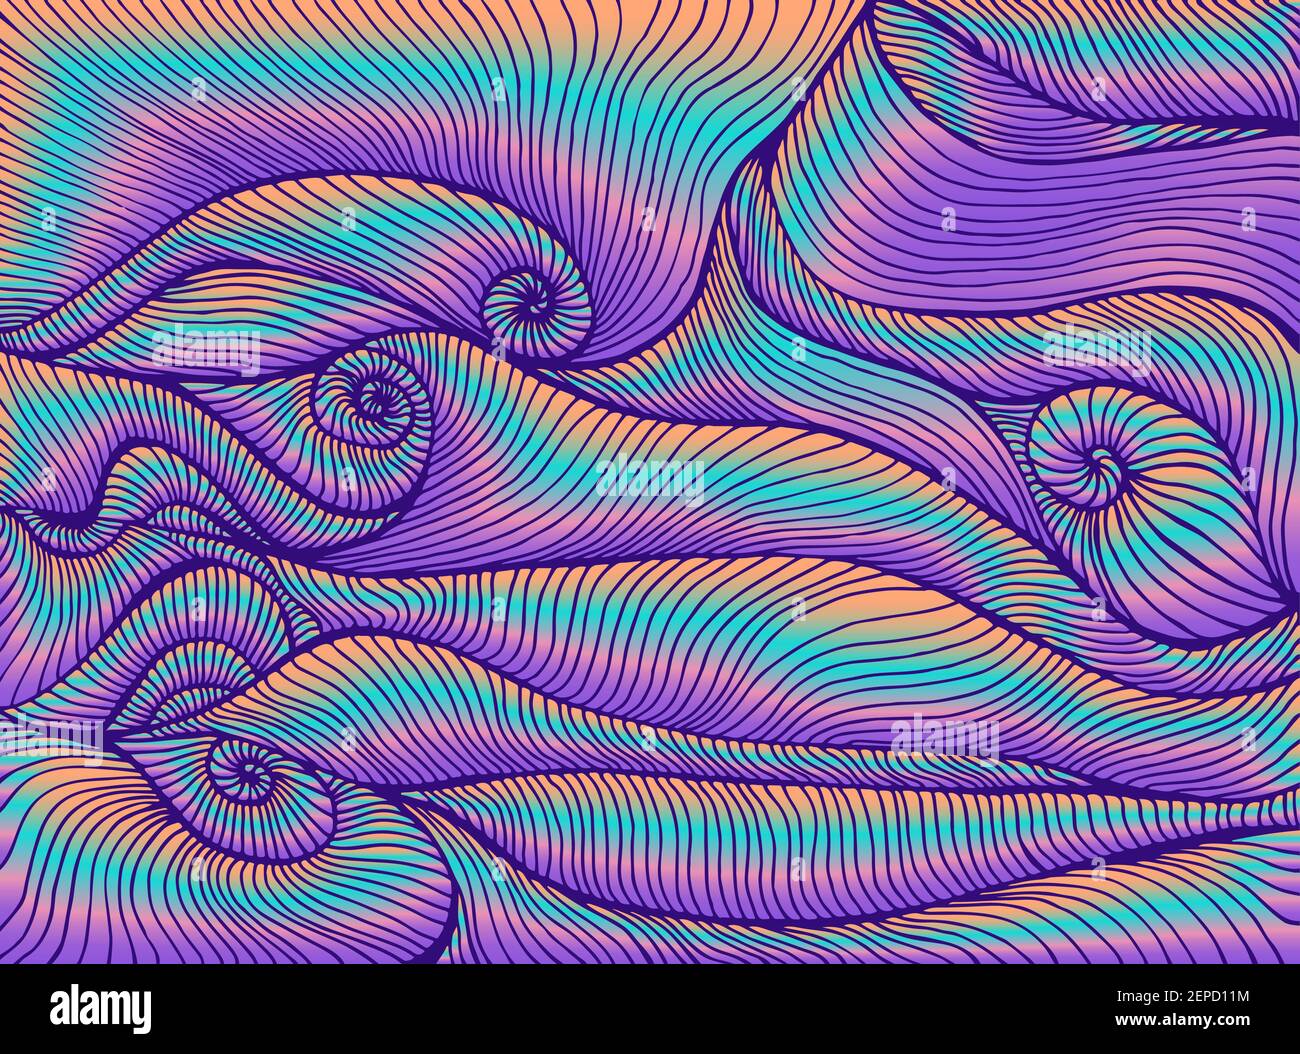 Style rétro hippie vagues psychédéliques abstraites lumineuses, couleurs vives dégradé orange bleu violet. Illustration de Vecteur